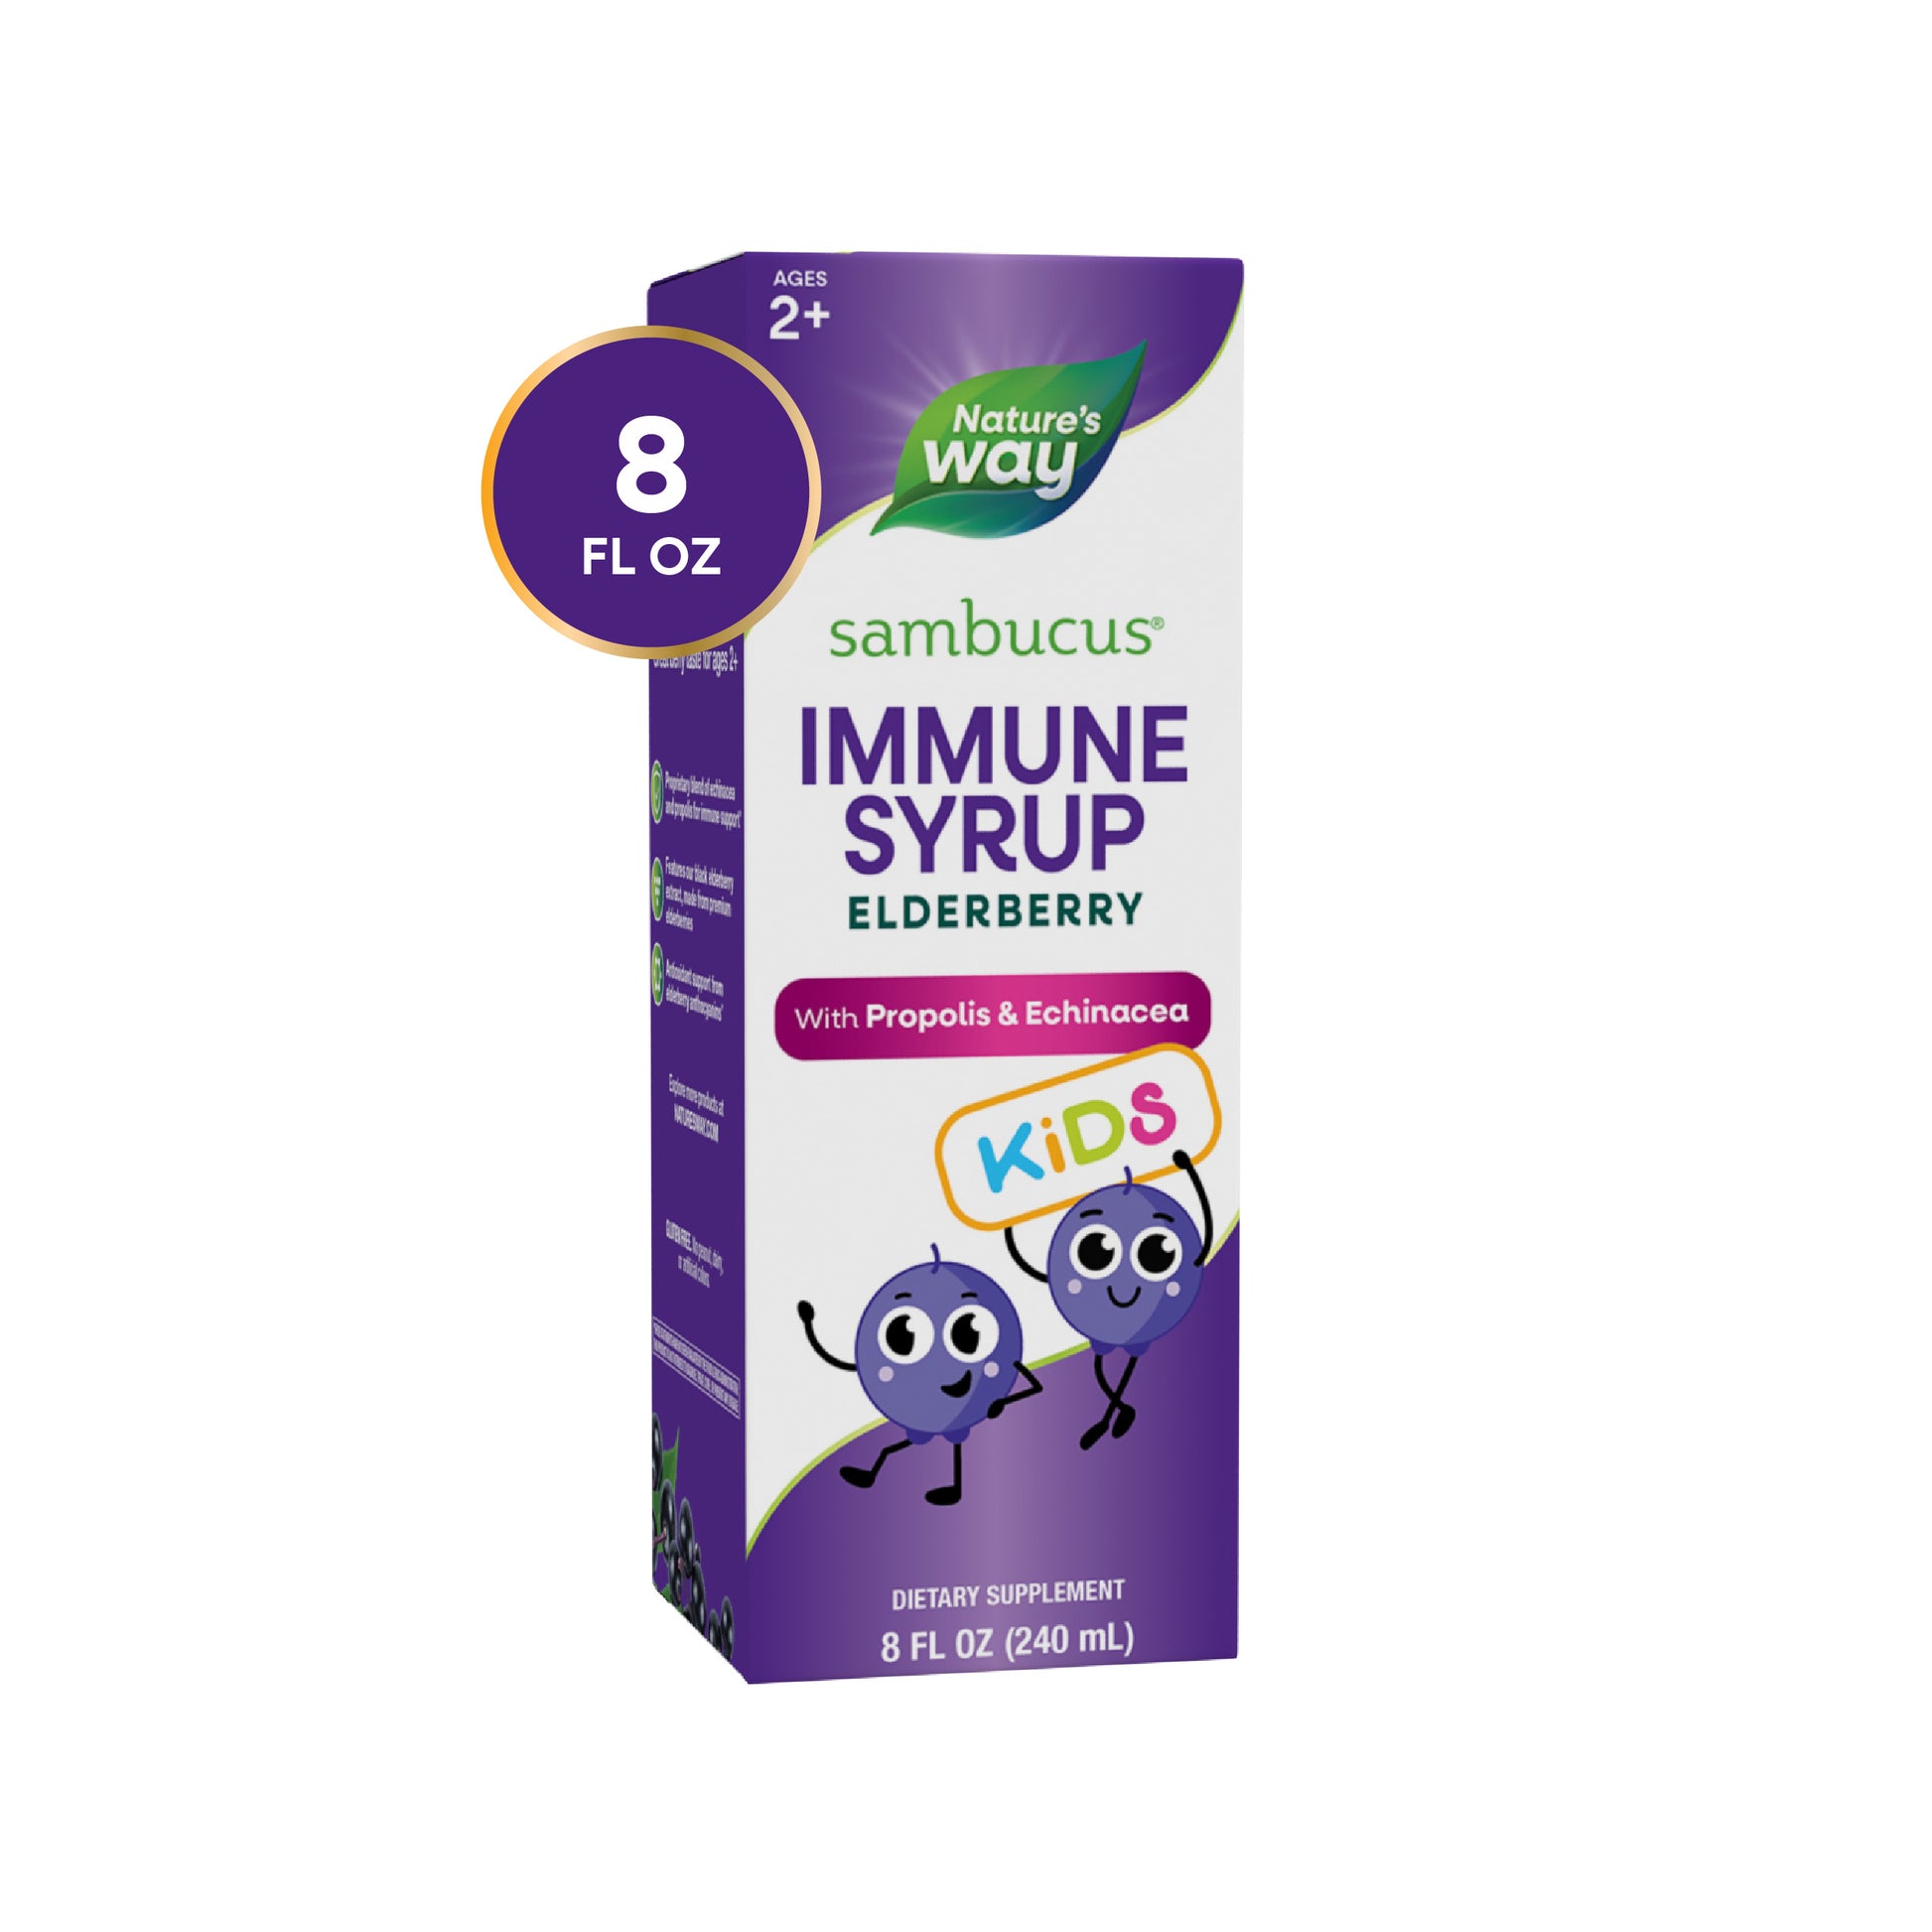 Nature's Way® | Sambucus Immune Syrup for Kids*